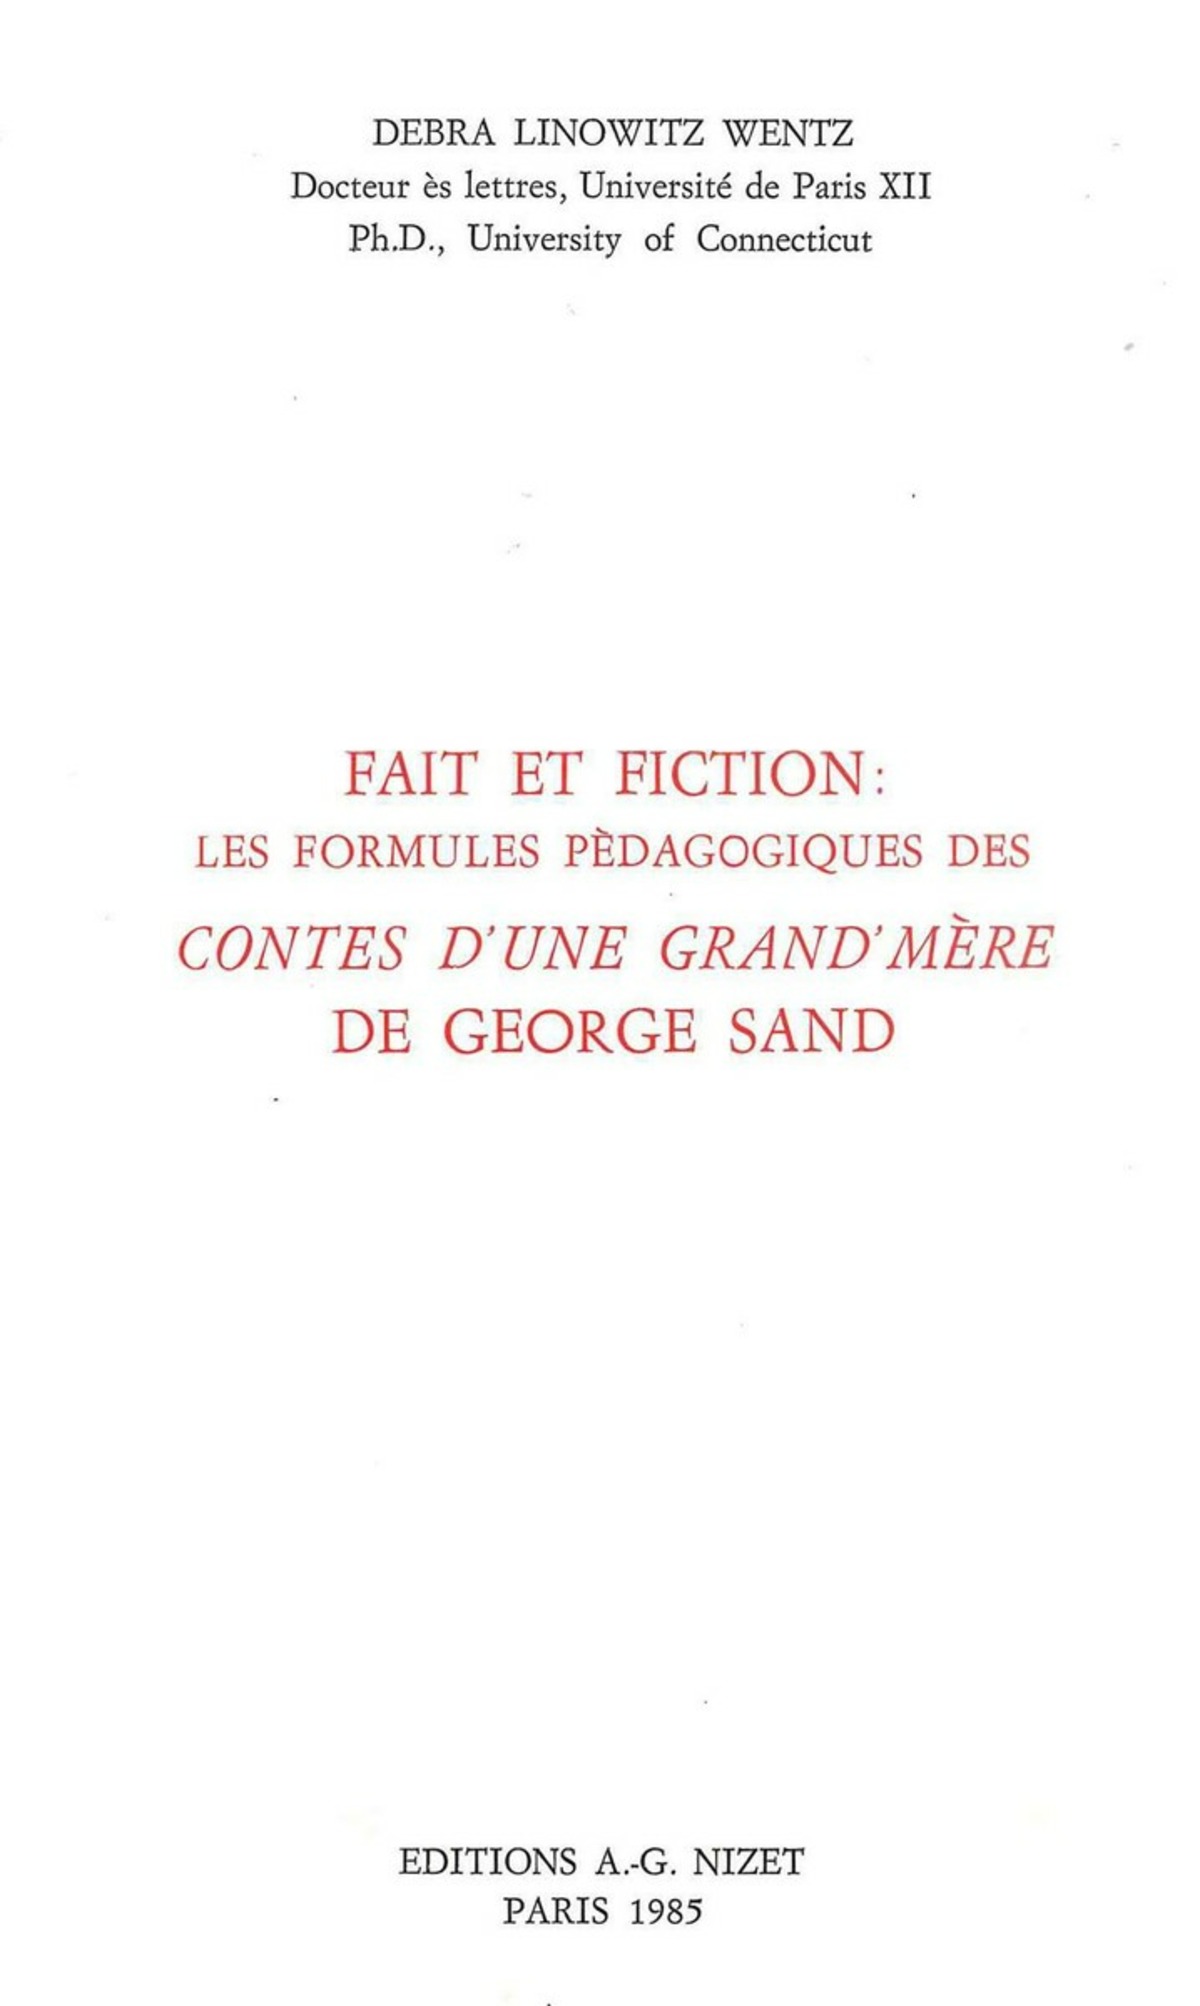 Faits et fiction: les formules pédagogiques des Contes d'une grand'mère de George Sand